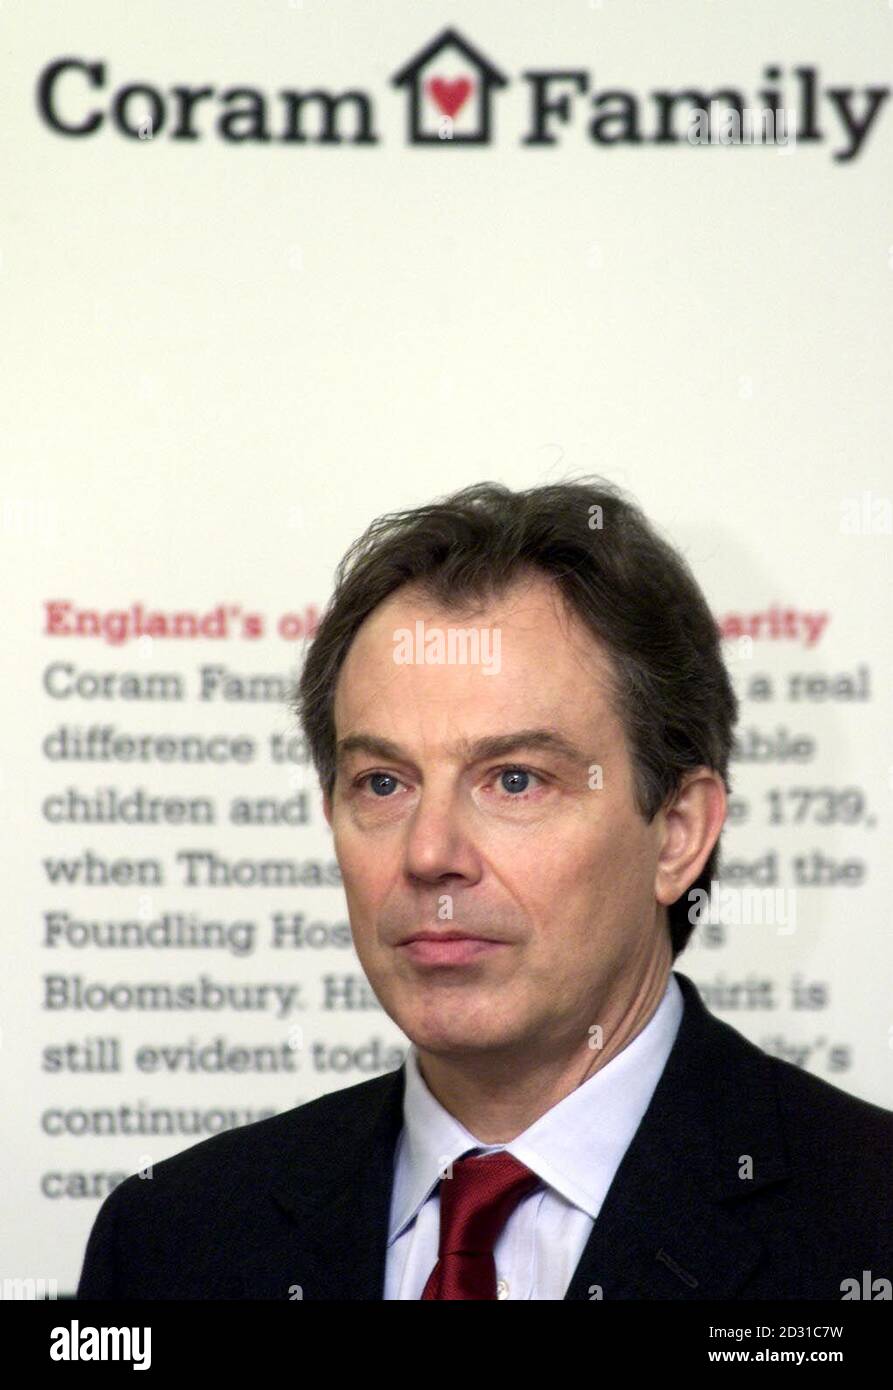 Der britische Premierminister Tony Blair spricht im Coram Family Center in London an adoptierte Kinder und Eltern. Blair hat sich persönlich für die Annahme interessiert und leitet einen Kabinettsausschuss, der zur Einführung neuer Gesetze geführt hat. Stockfoto